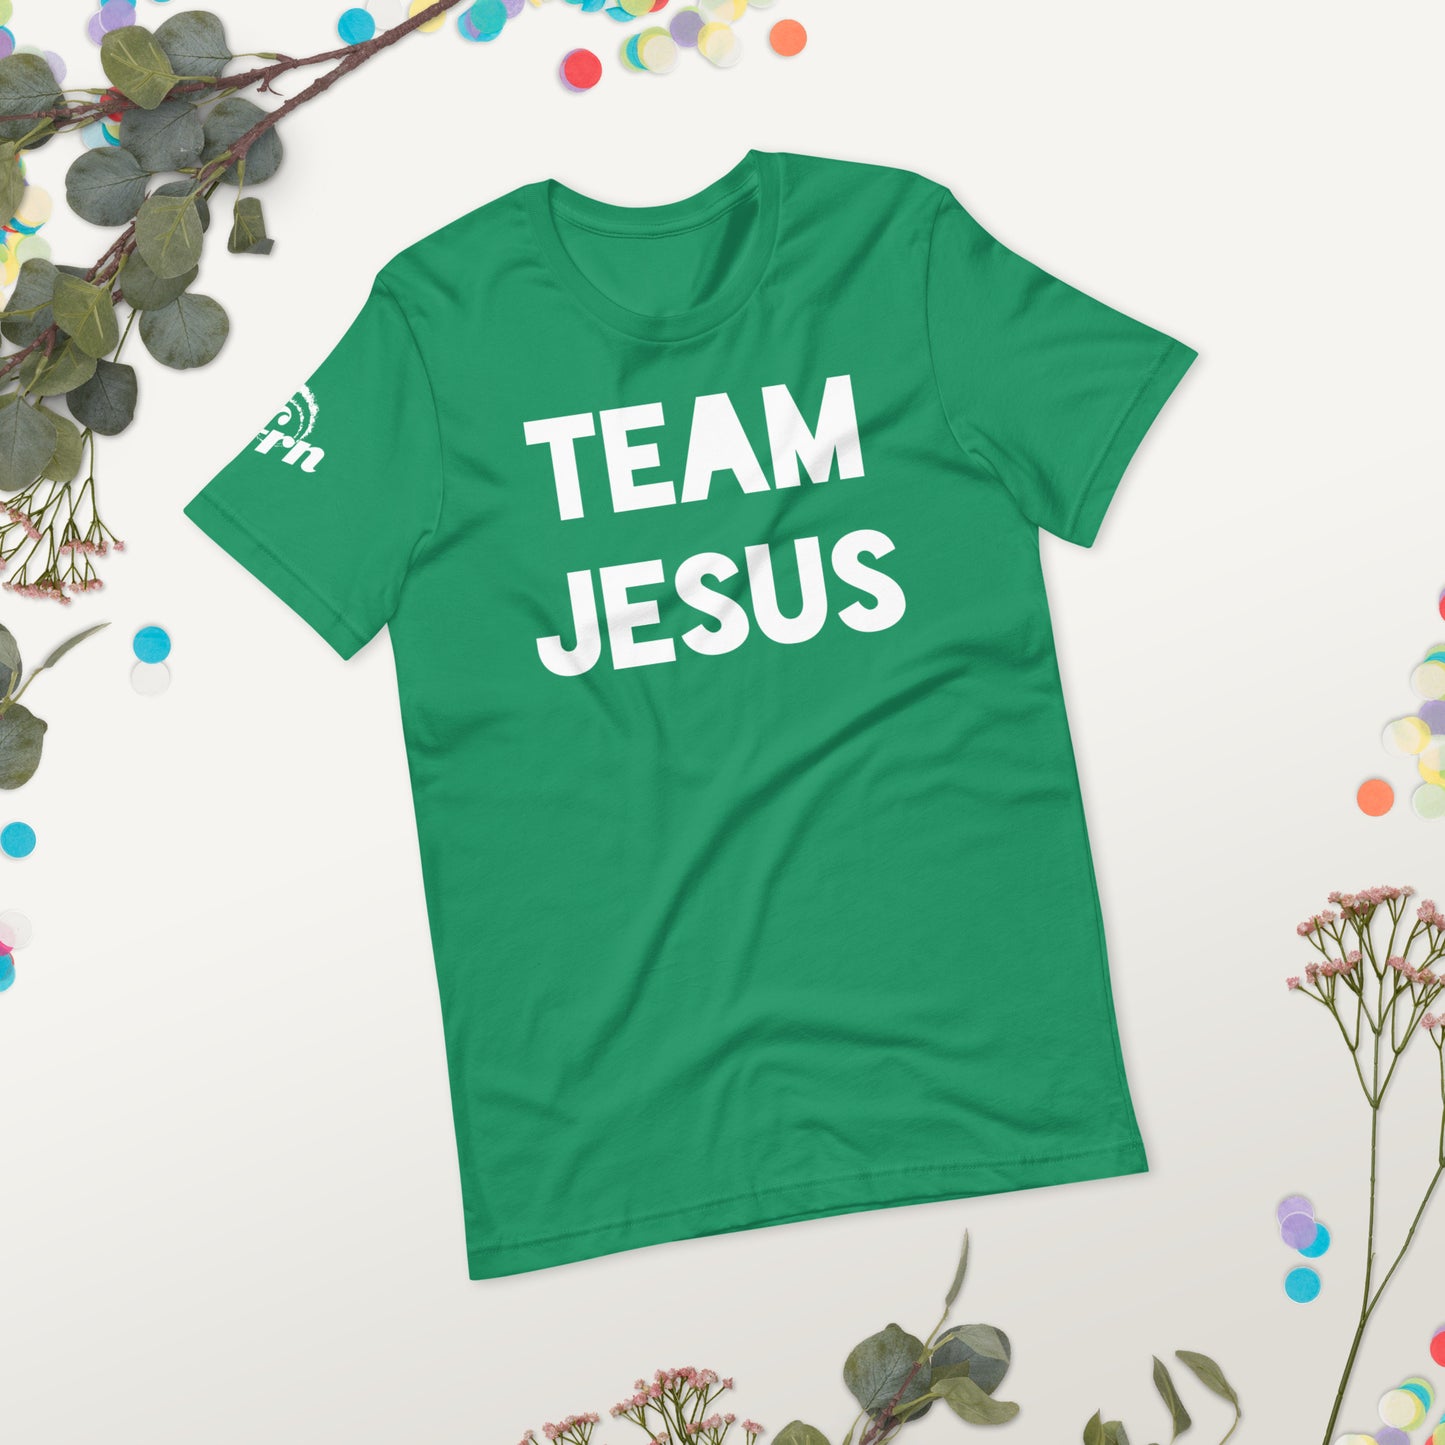 Team Jesus - Adult Tee